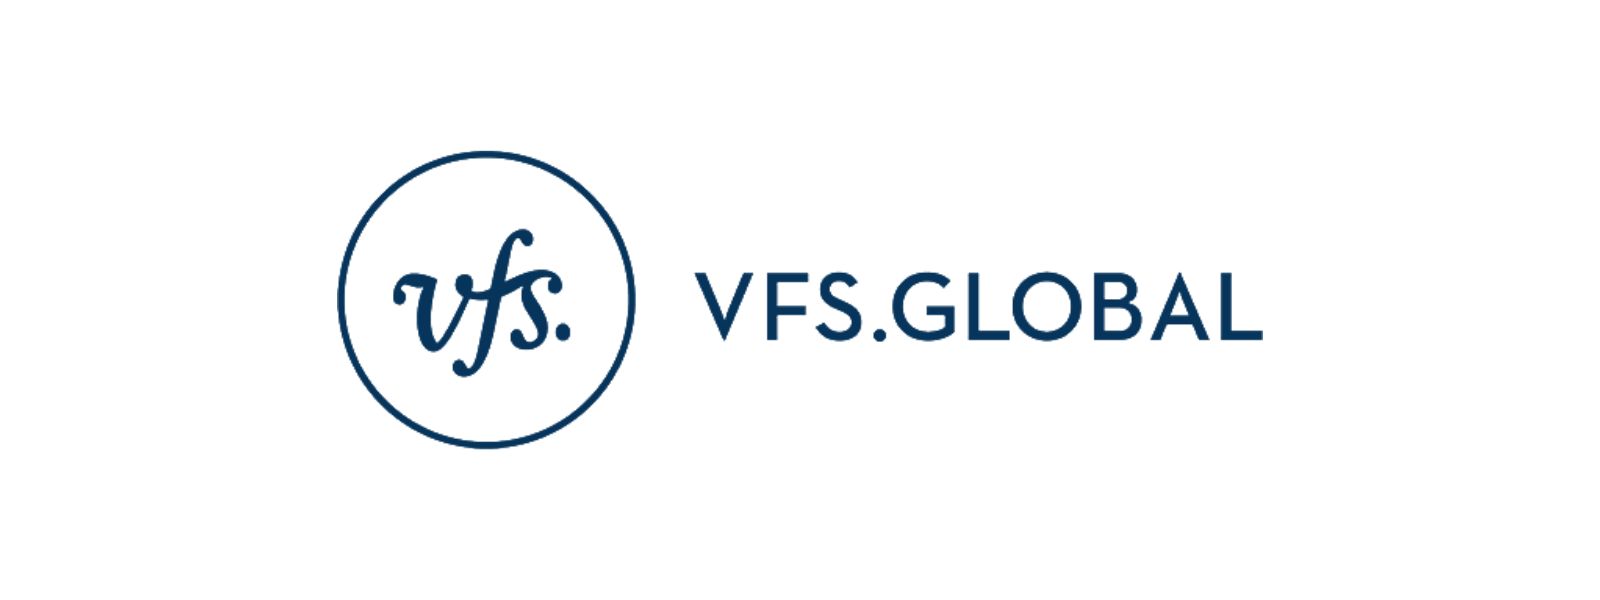 VFS Global's Statement on Sri Lanka's E-Visa